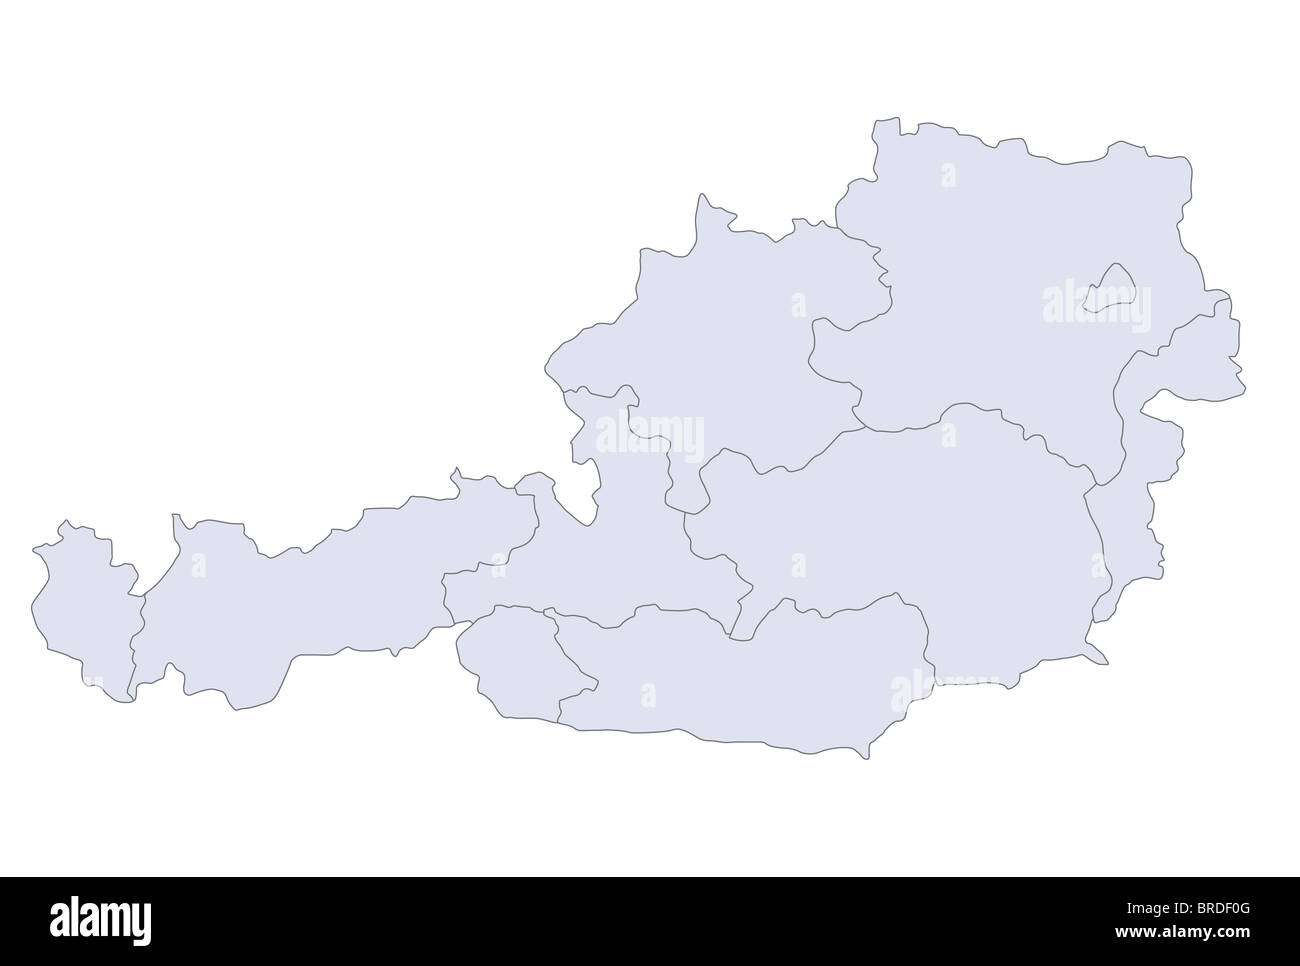 Eine stilisierte Karte von Österreich zeigt die verschiedenen Provinzen. Stockfoto